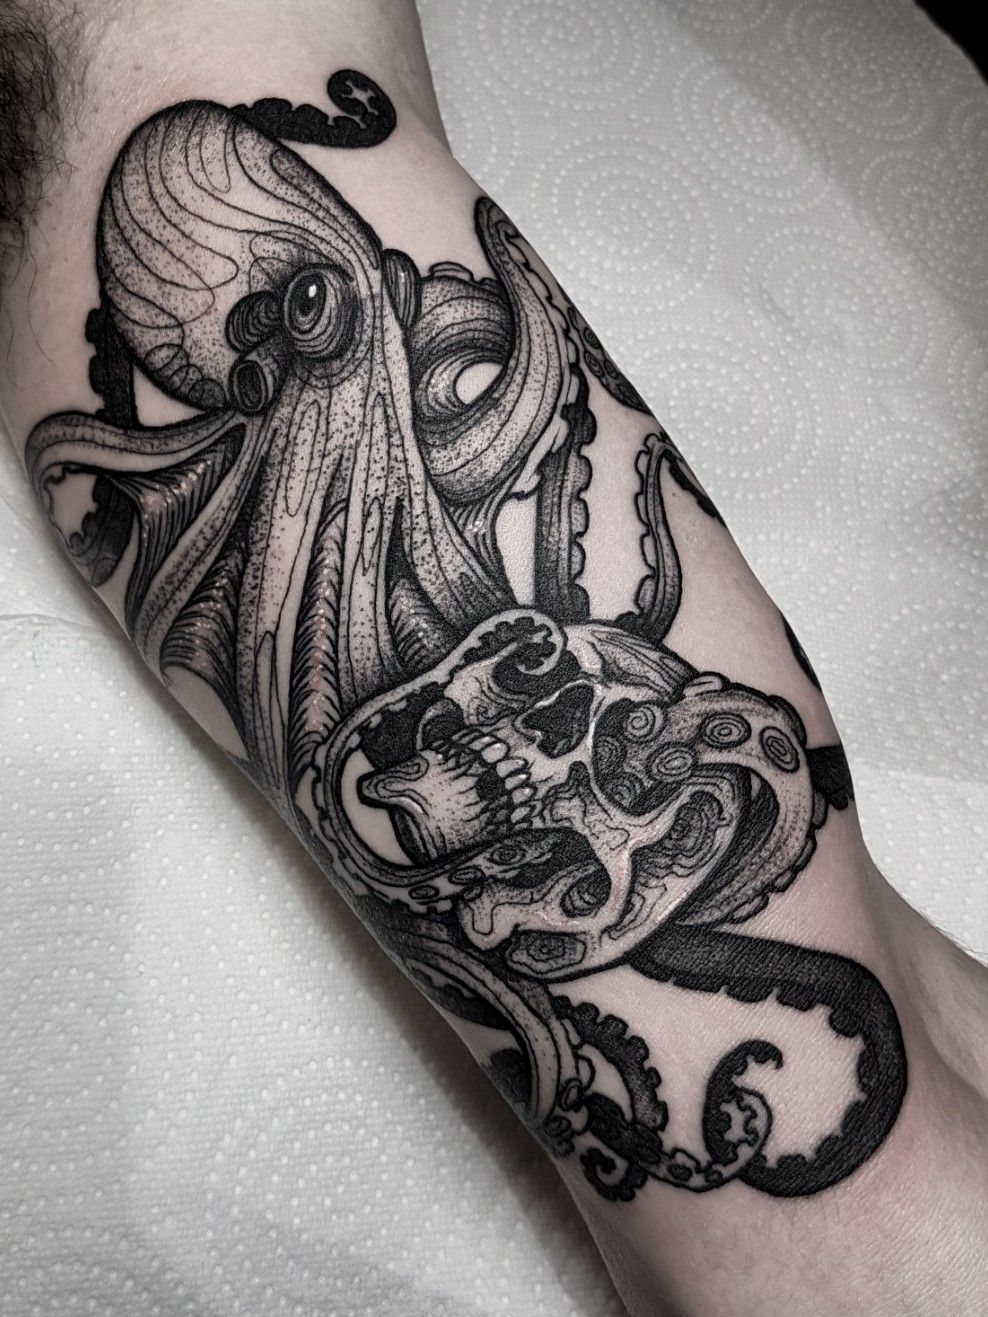 45 Octopus Skull Tattoo Designs And Ideas